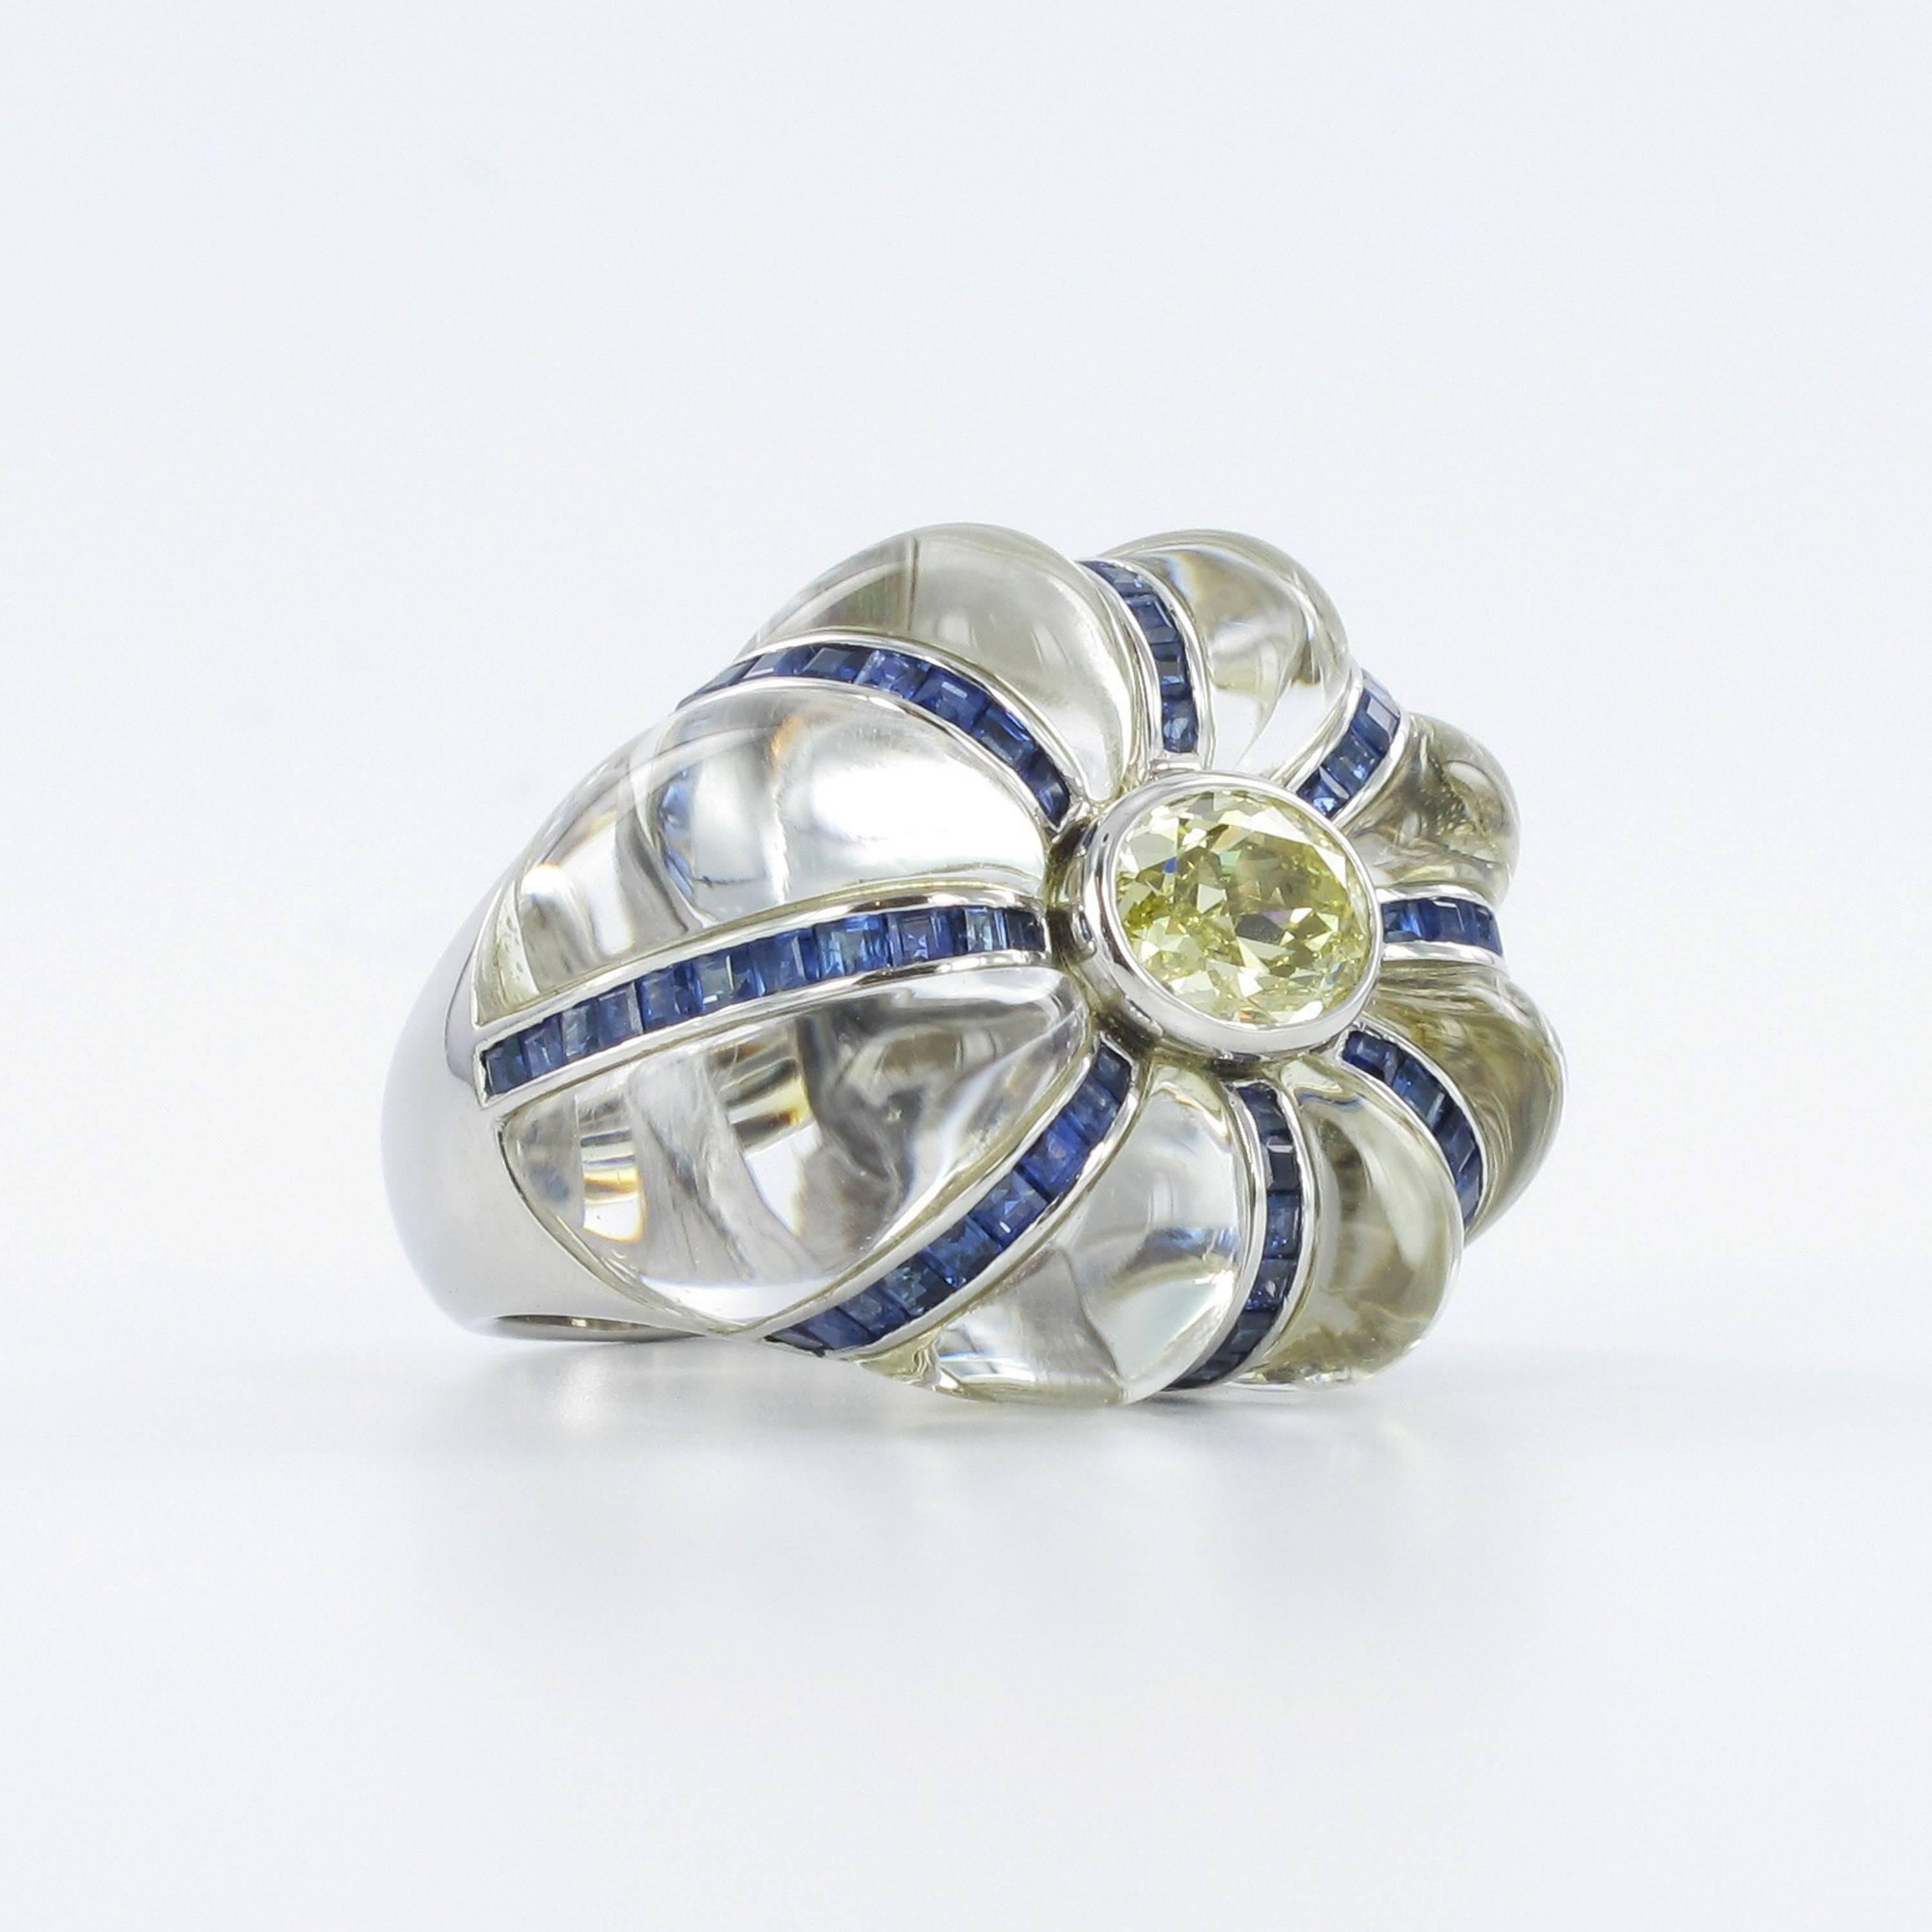 Ein spektakulärer Ring aus Bergkristall und Diamanten in Platin 950. Bombengeschliffener, hochwertiger, augenreiner Bergkristall. Umgeben von einem GIA-zertifizierten, ovalen, fancy-gelben Diamanten von 1,46 Karat, Reinheit si1. Akzentuiert mit acht